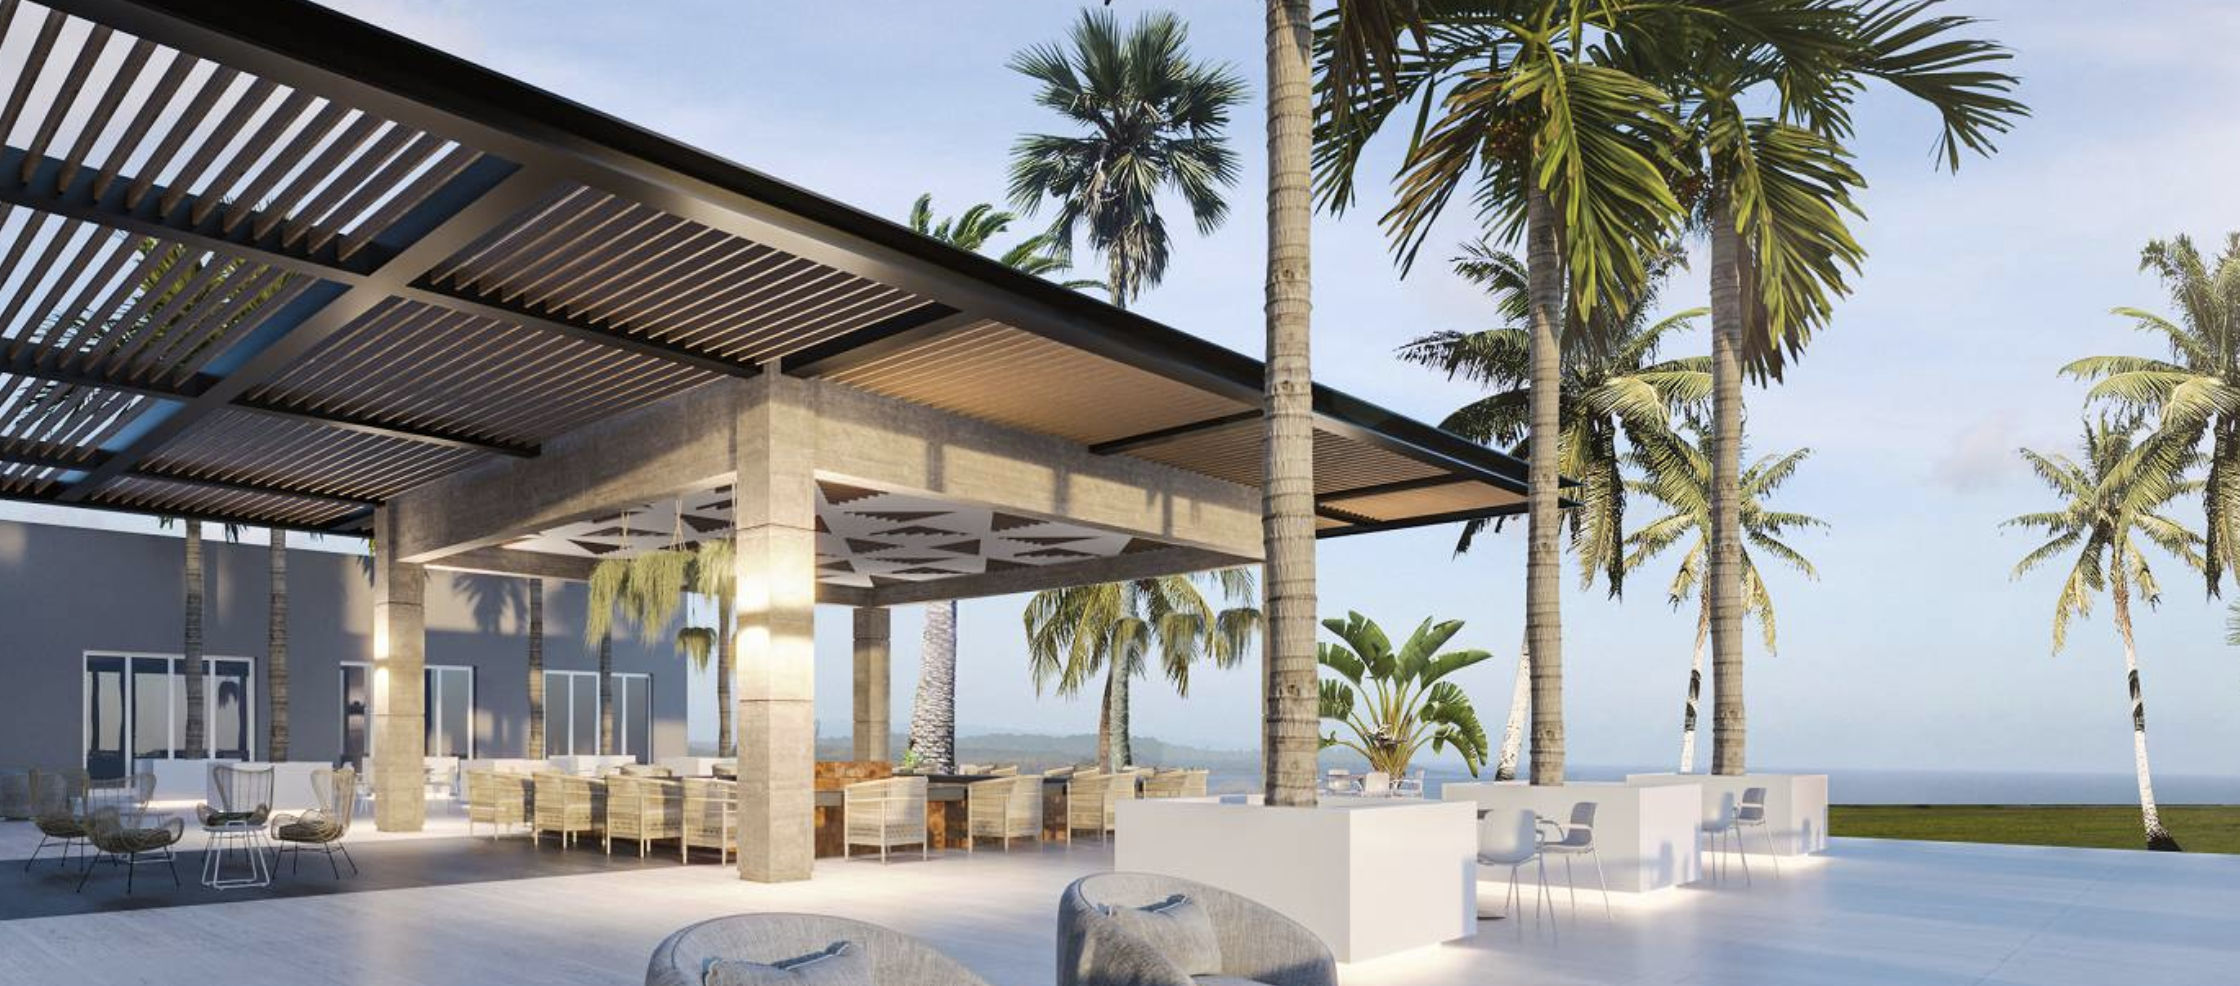 The Hyatt Ziva Riviera Cancun